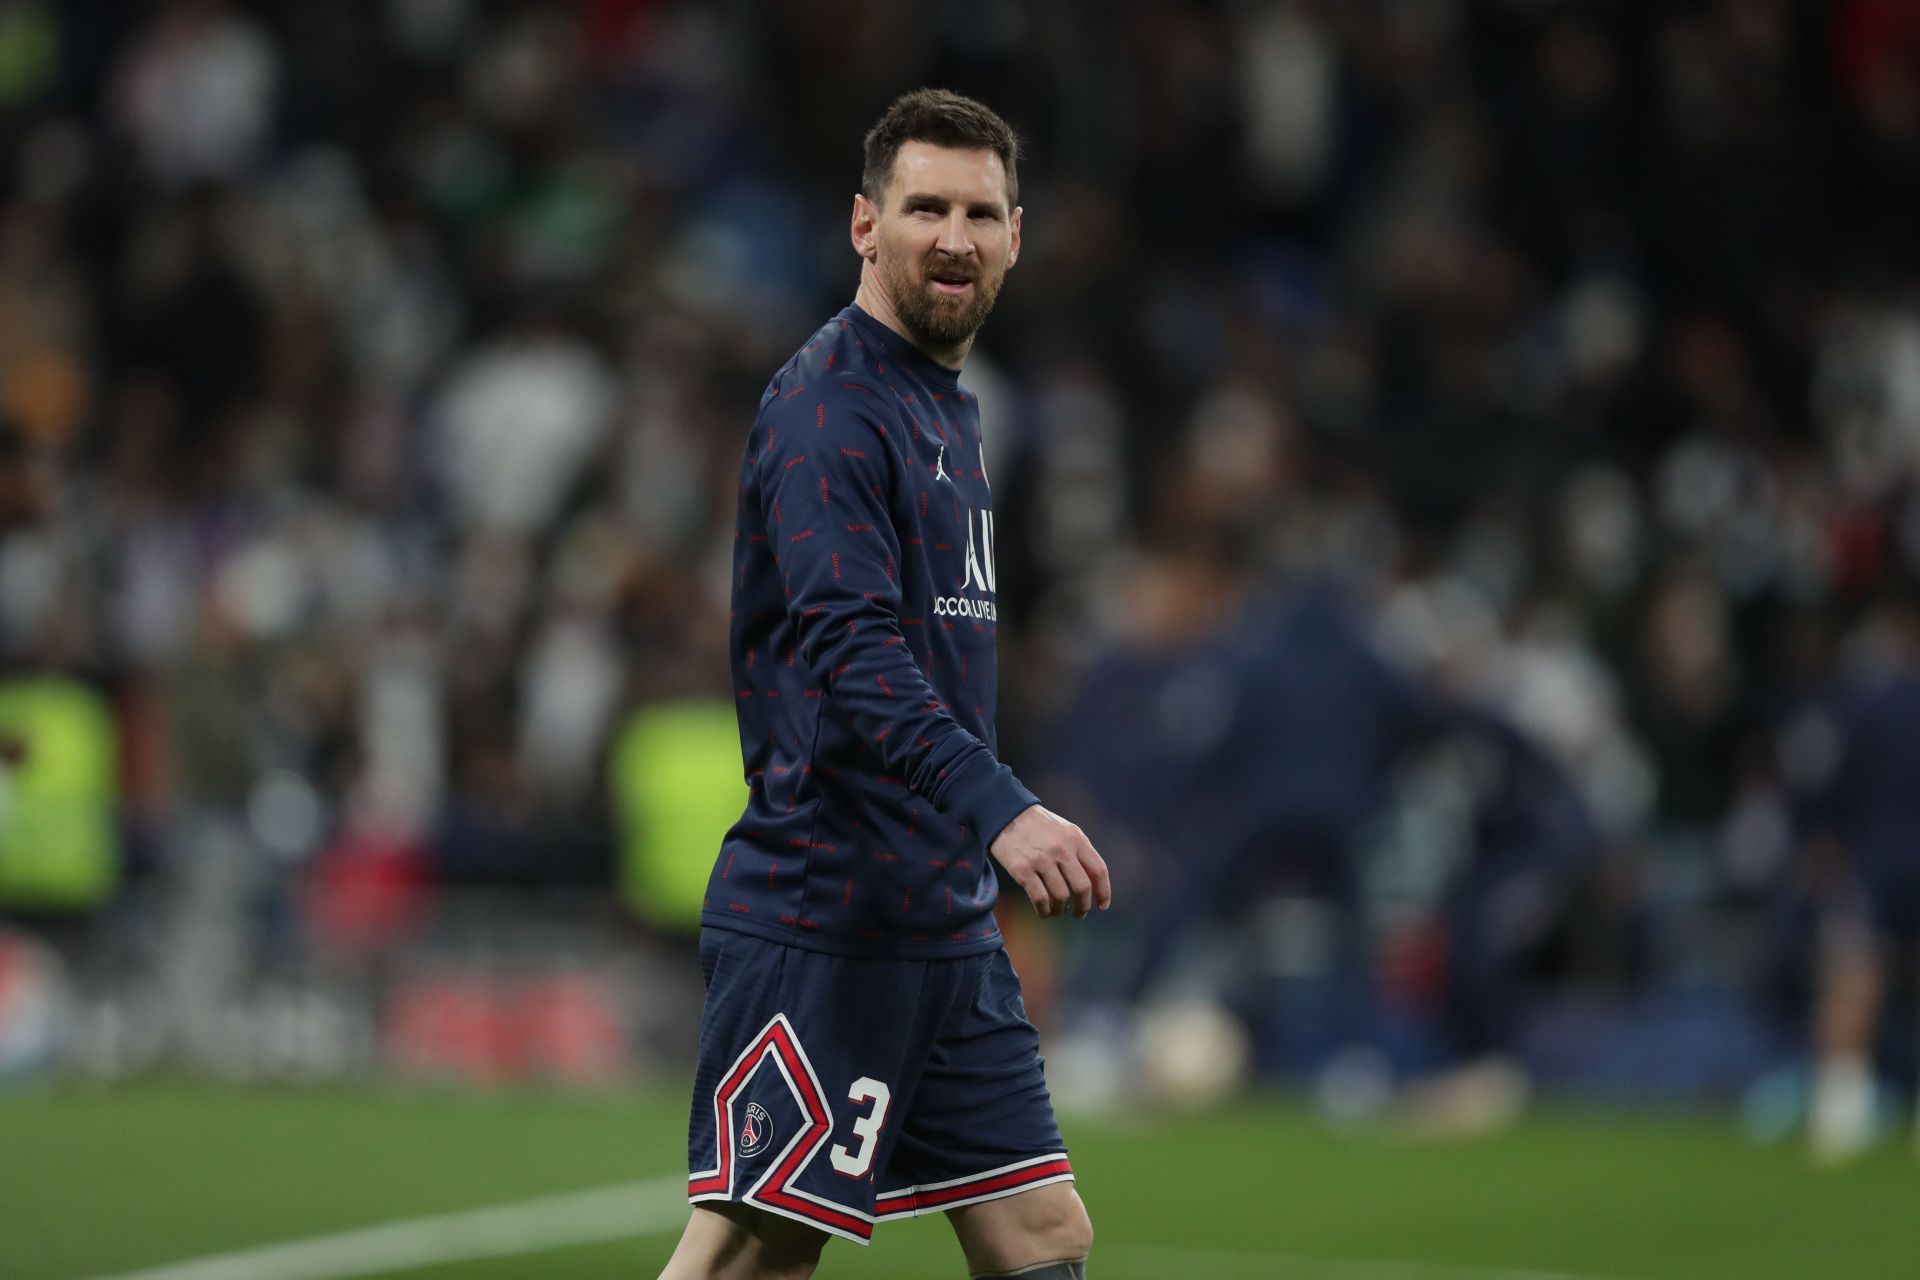 Lionel Messi has endured a difficult debut season at the Parc des Princes